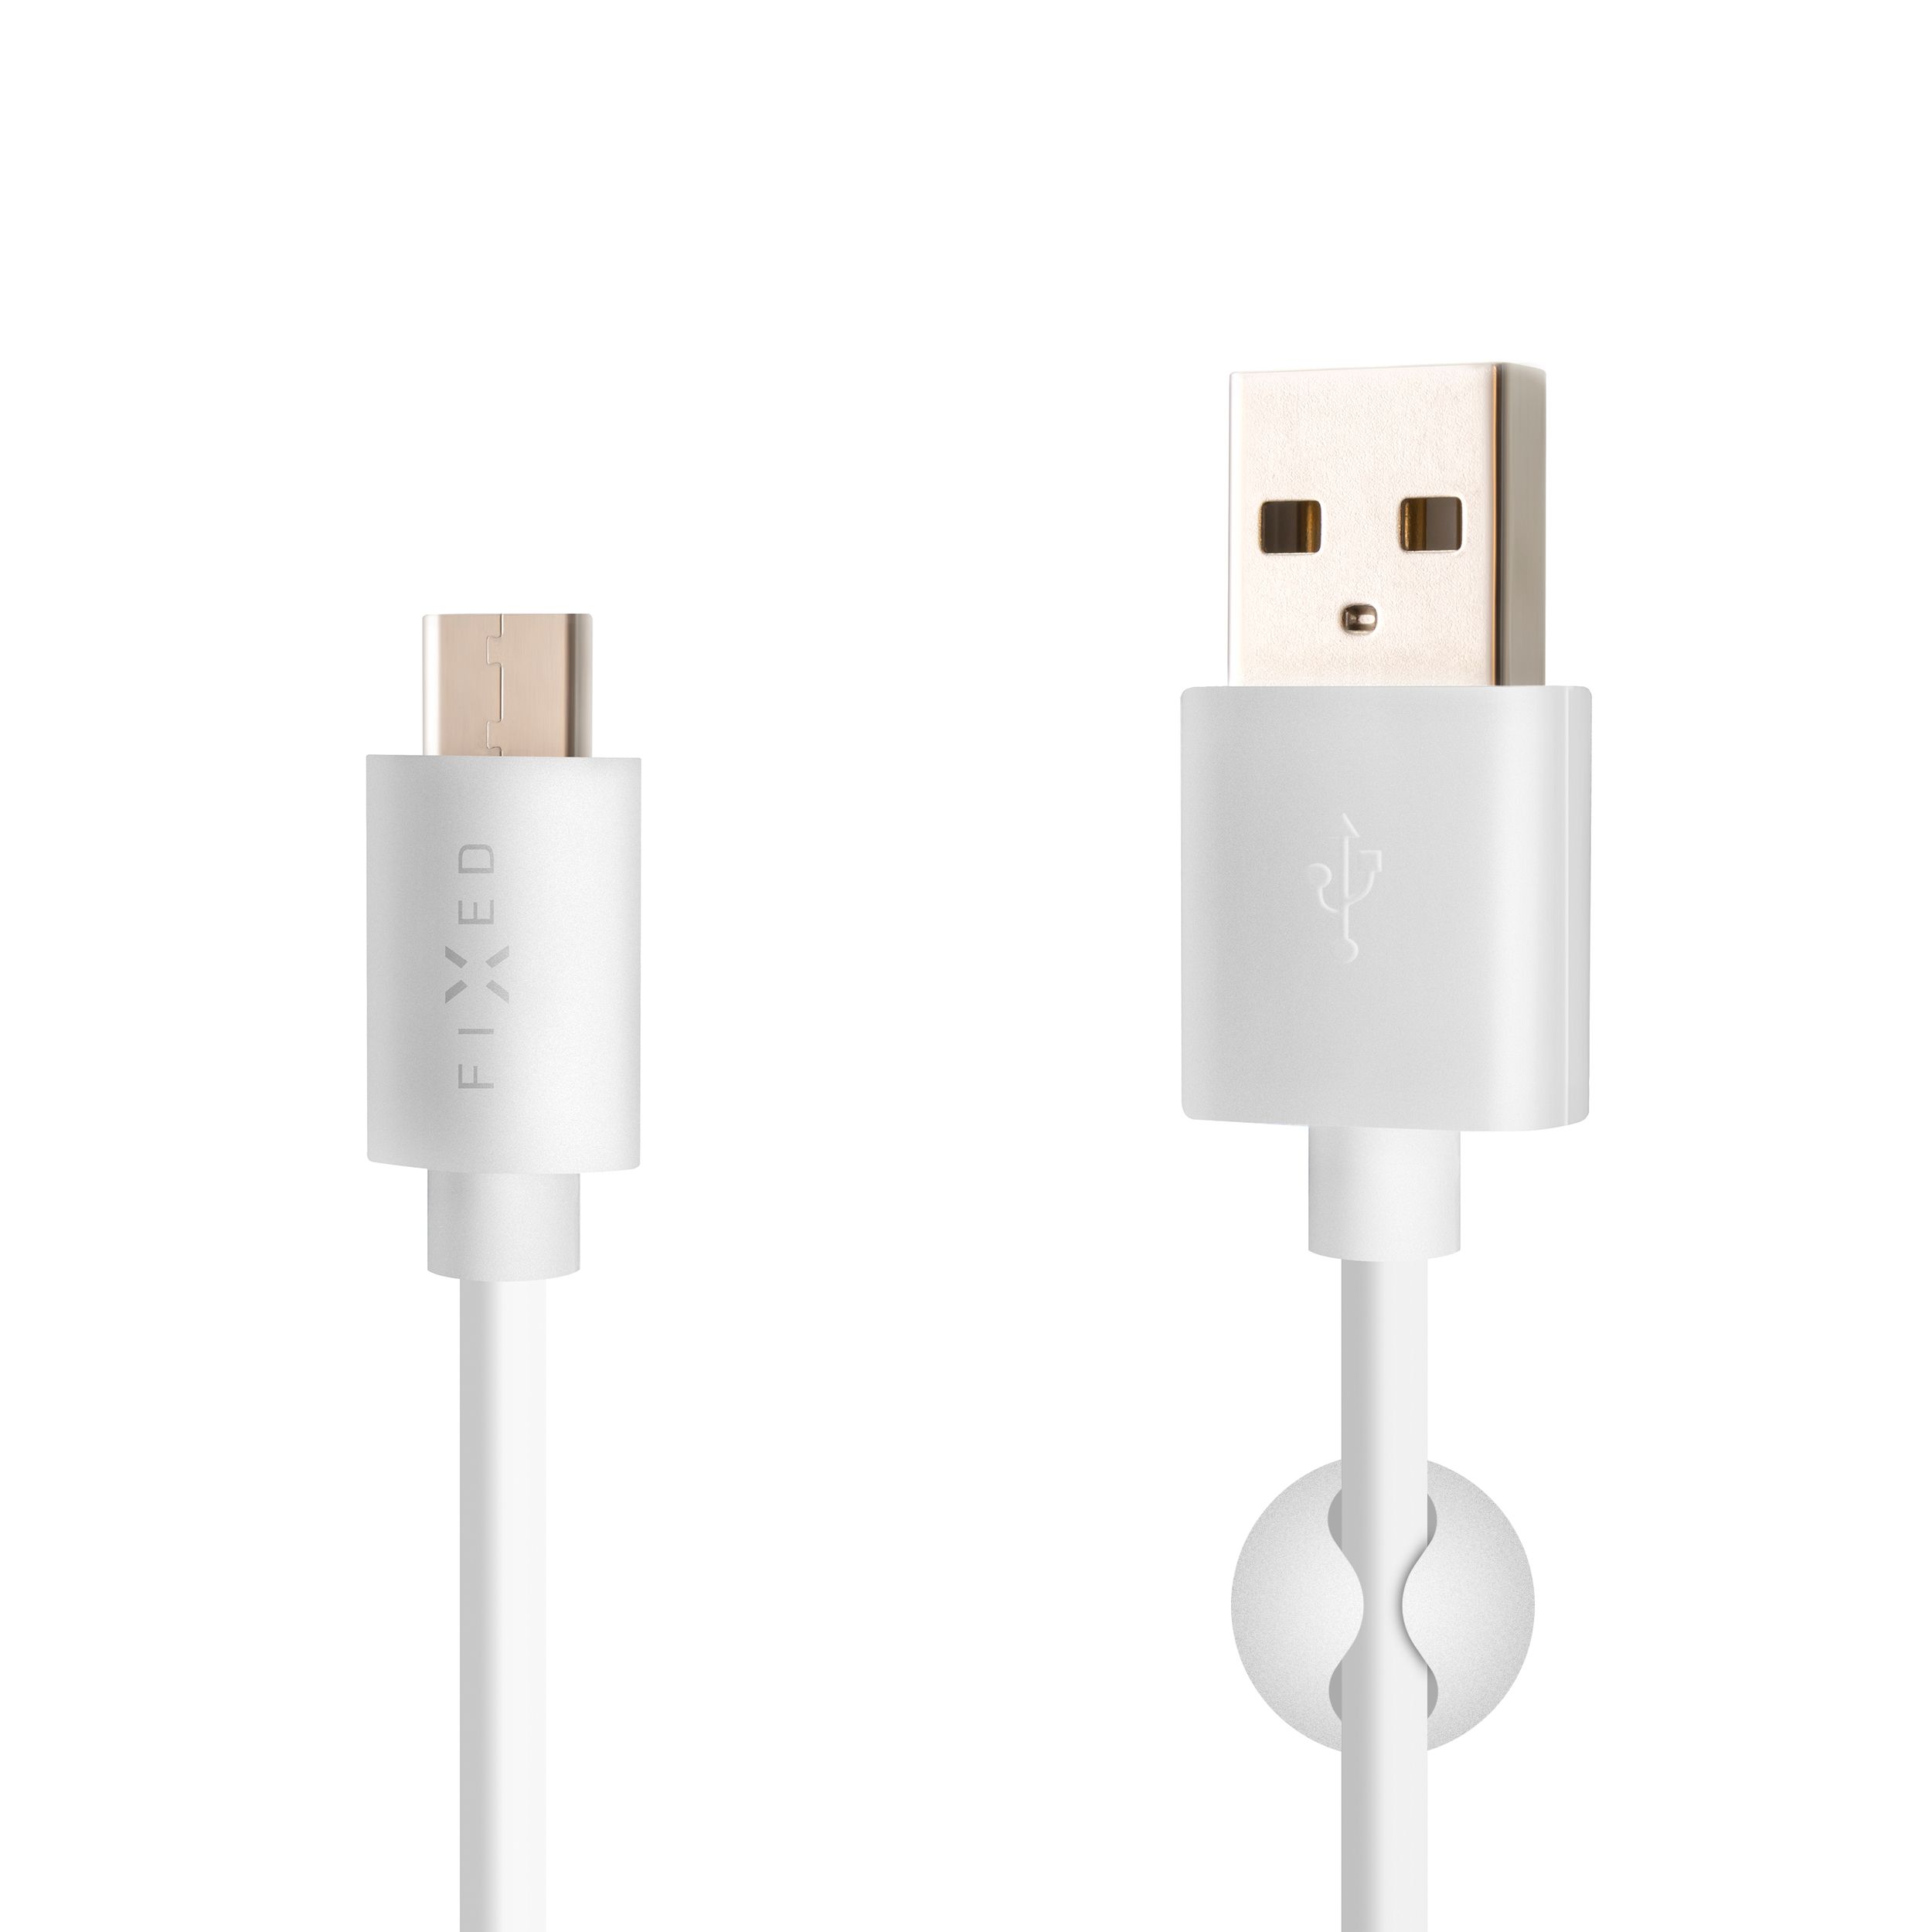 Dlouhý datový a nabíjecí kabel s konektory USB/USB-C, USB 2.0, 2 metry, bílý